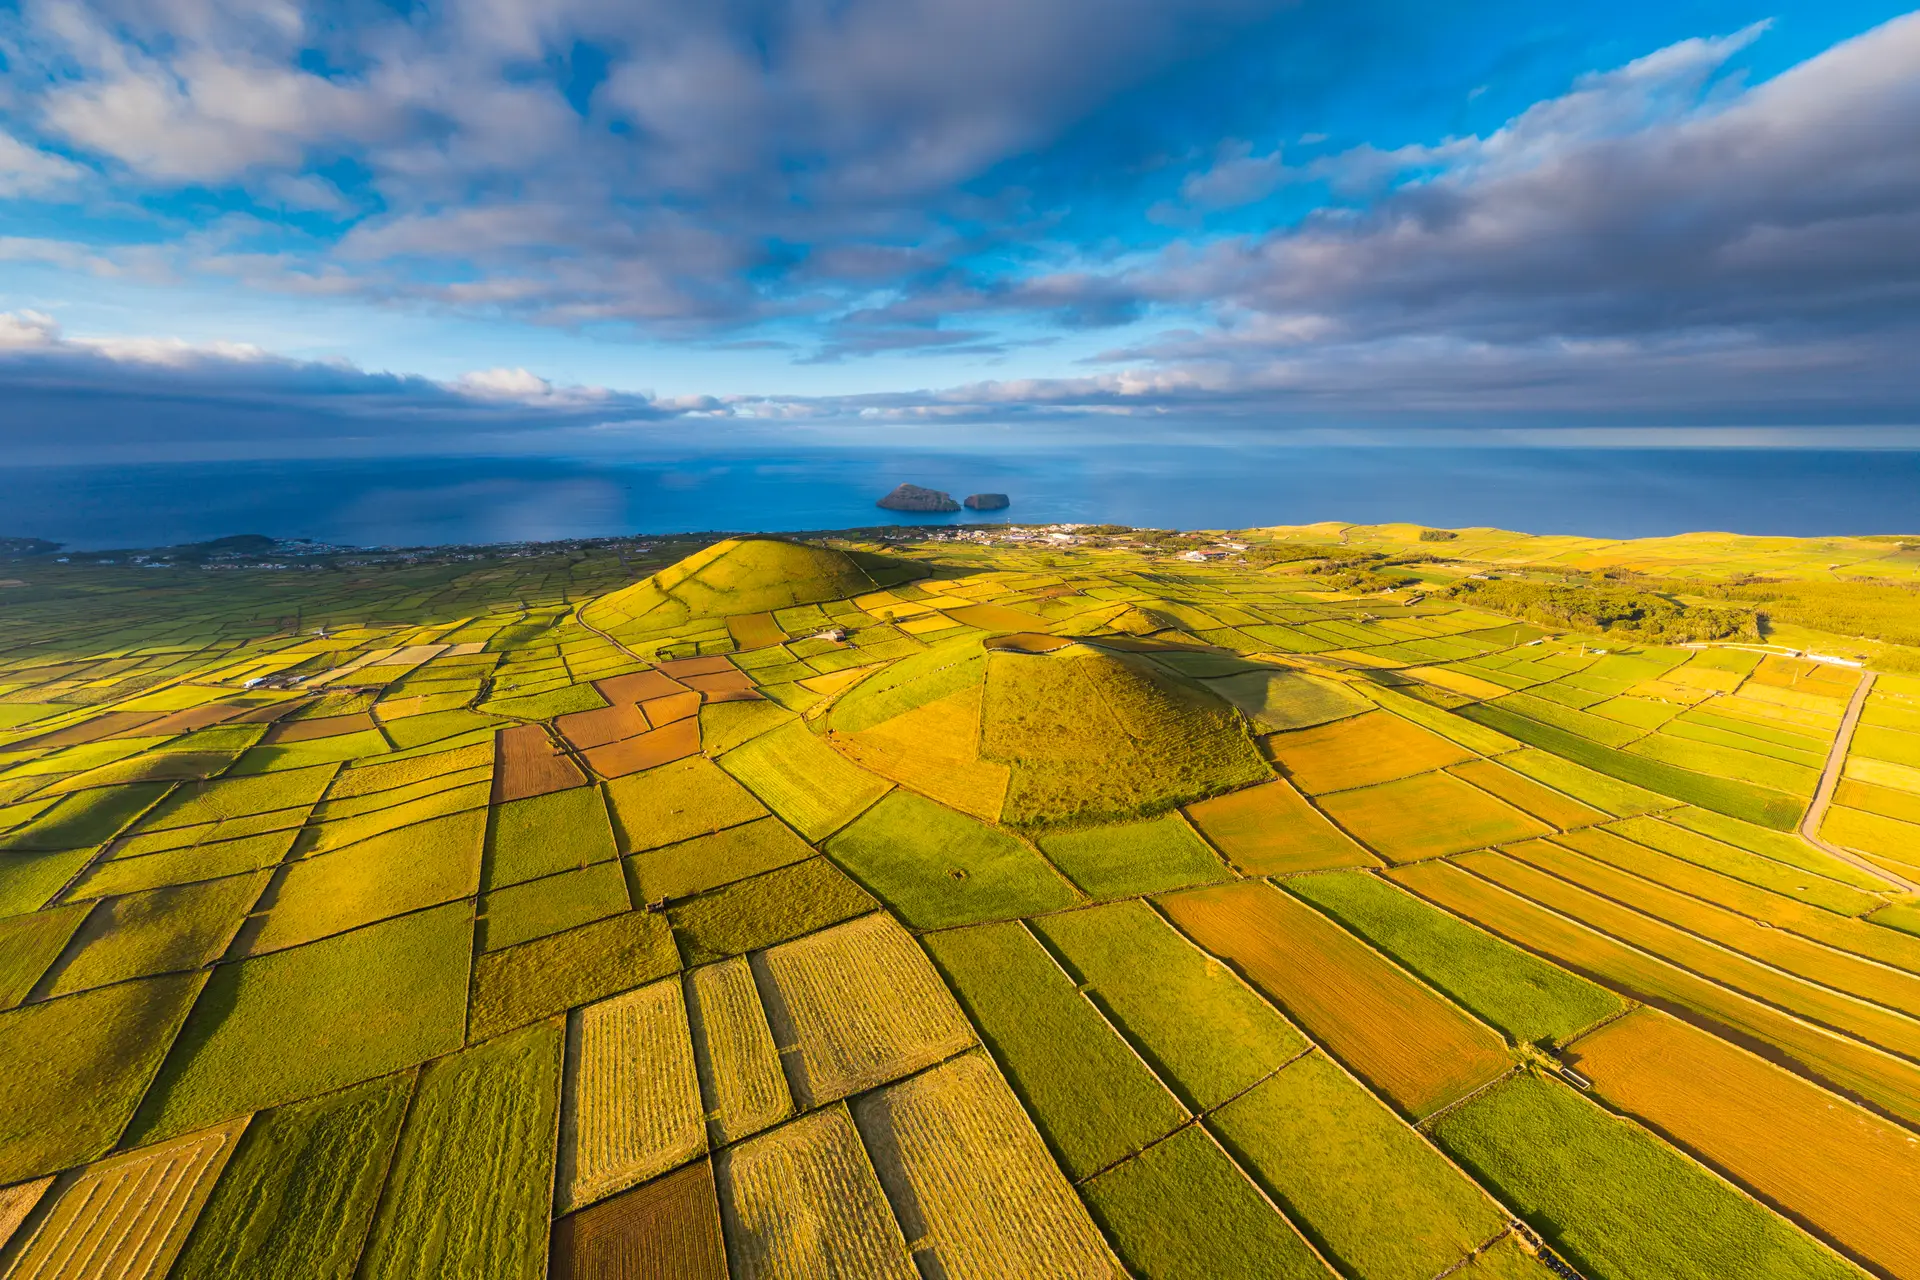 Açores pode ser a região europeia a crescer mais graças aos fundos comunitários